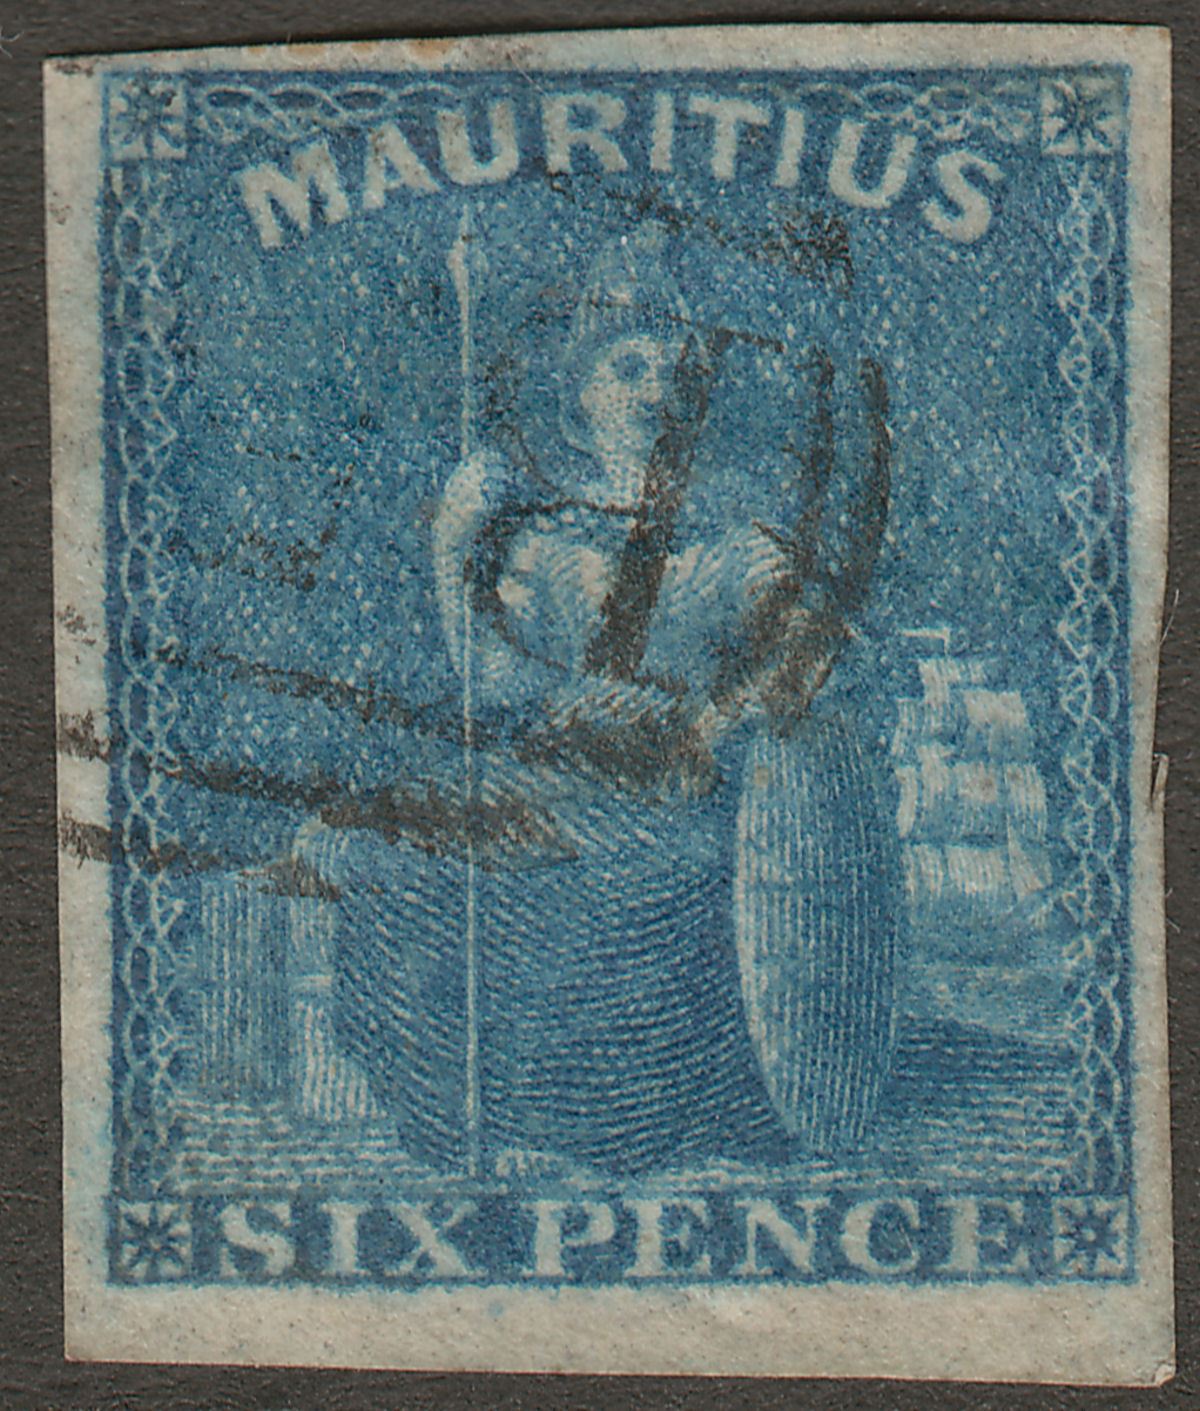 Mauritius 1859 QV Britannia 6d Blue Imperf Used SG32 cat £55 B53 Postmark